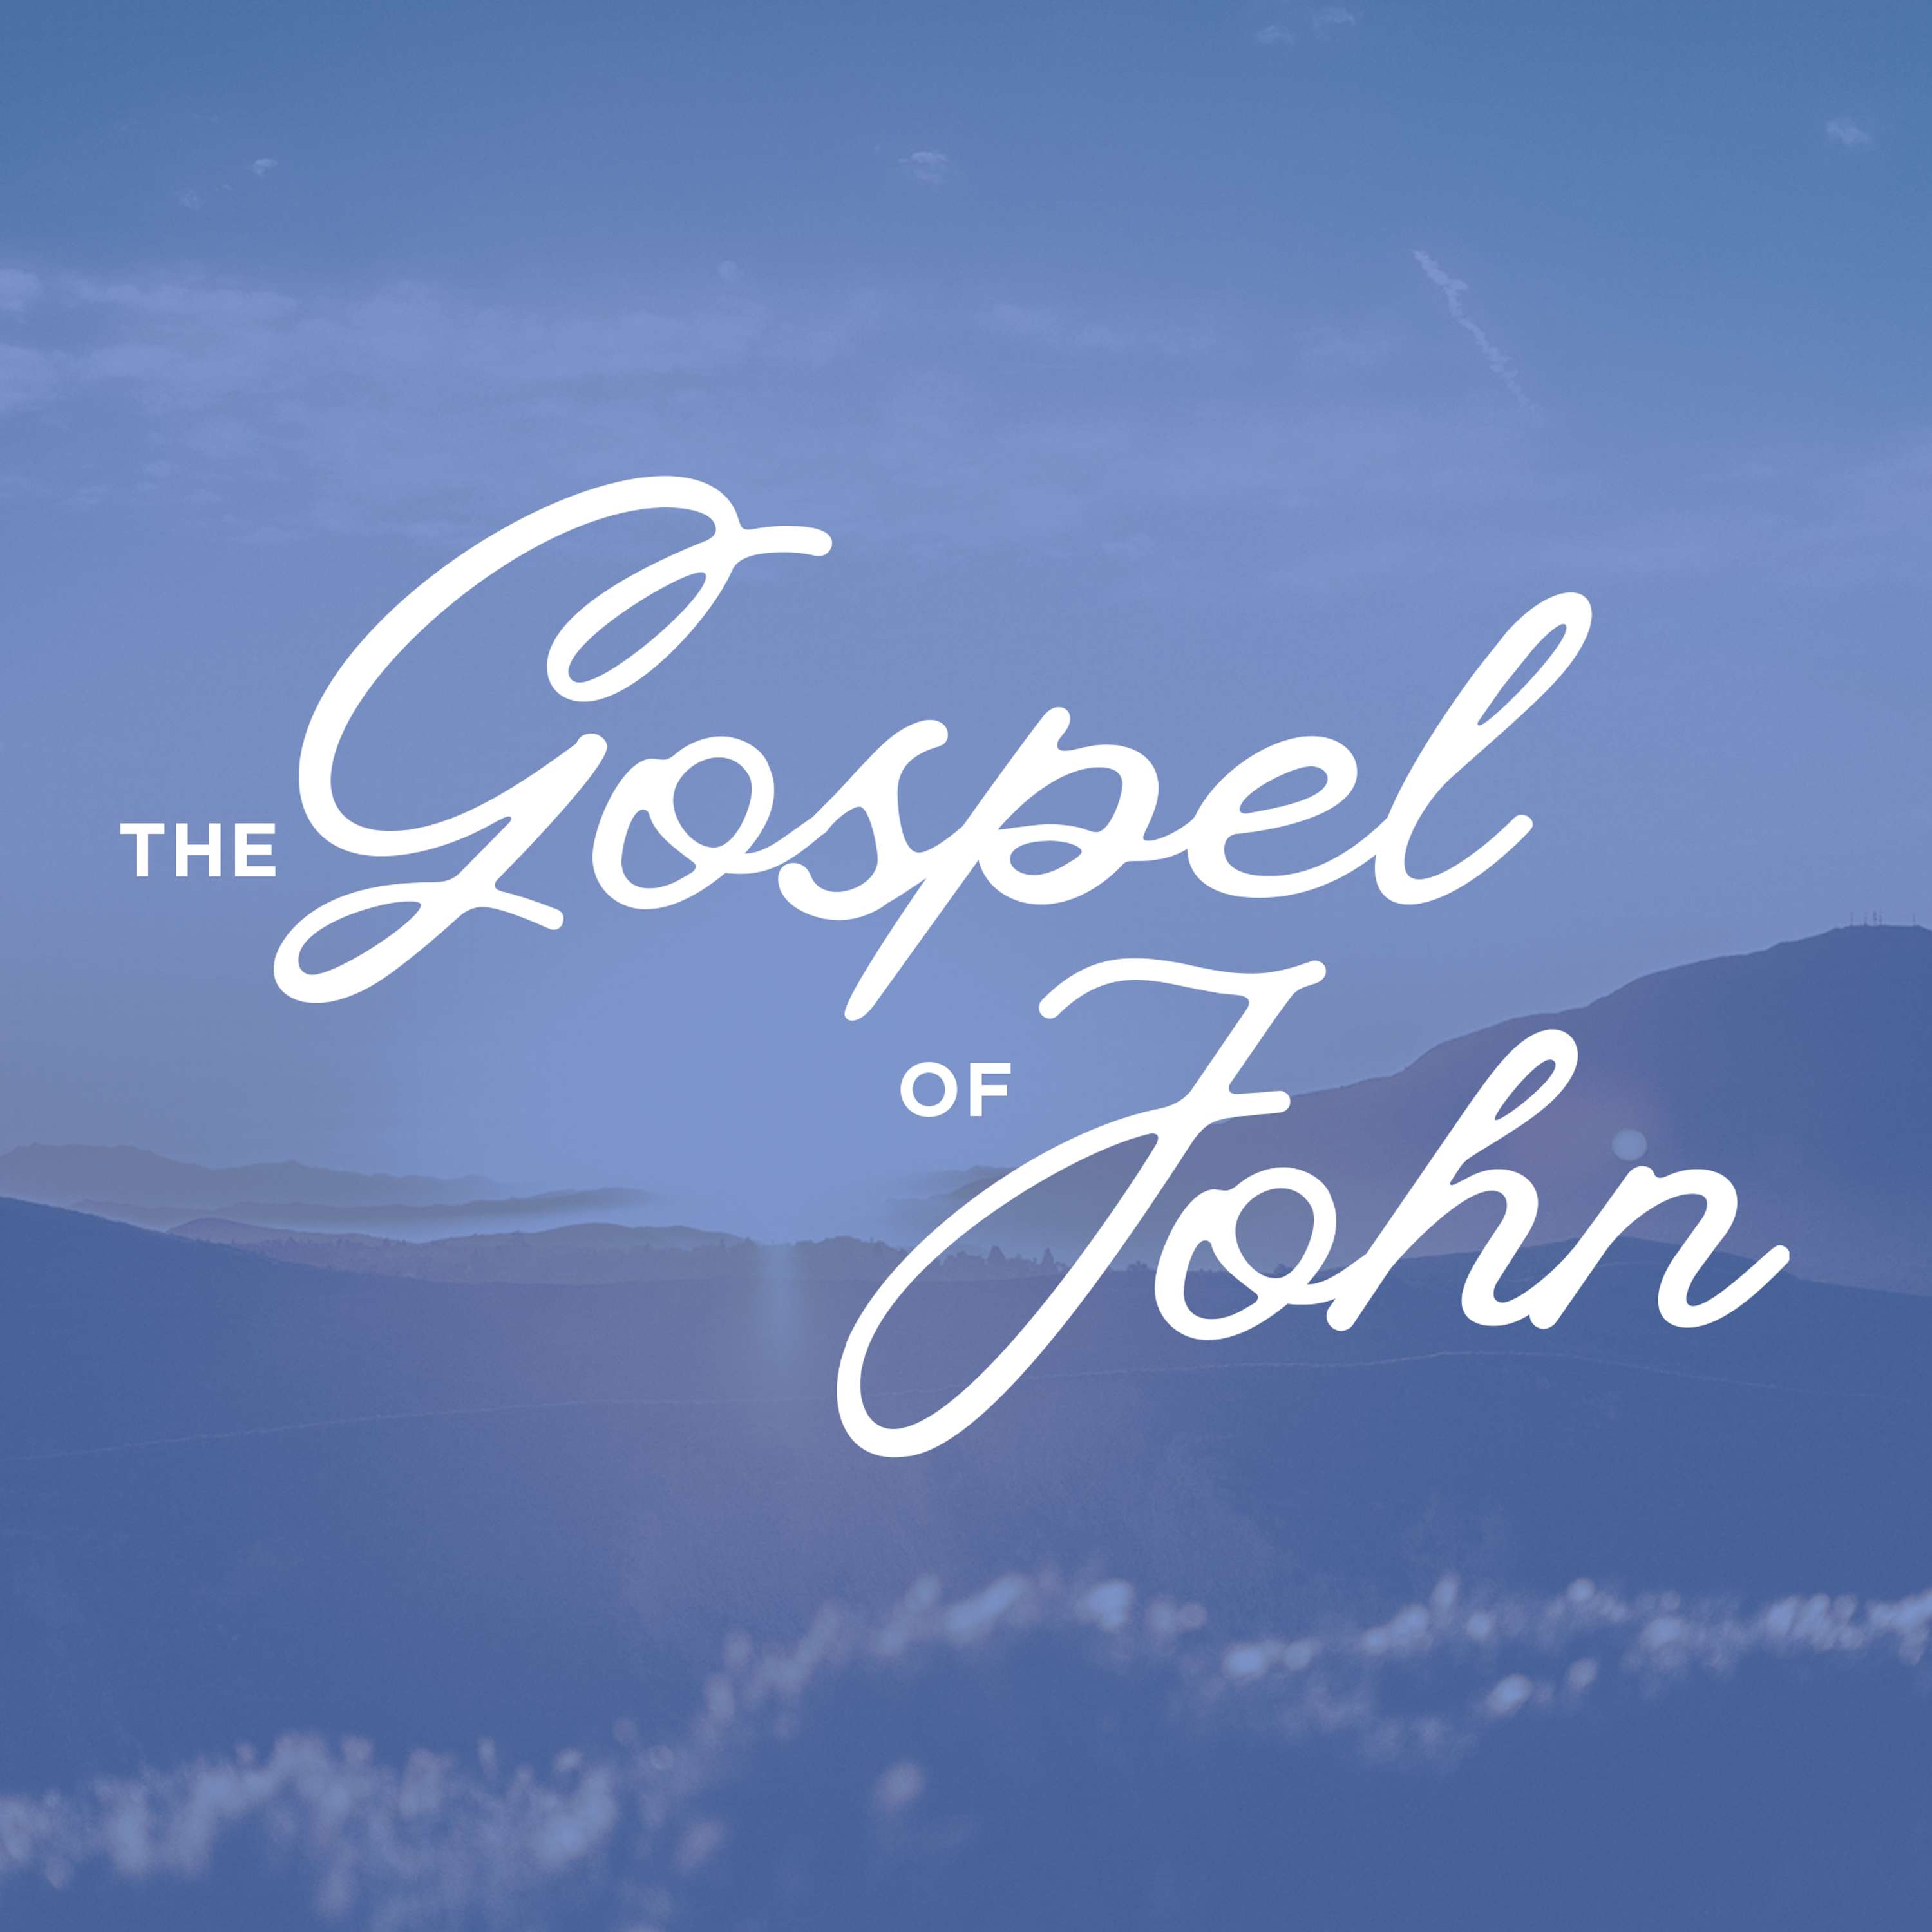 The Journey to Deeper Belief (John 4)